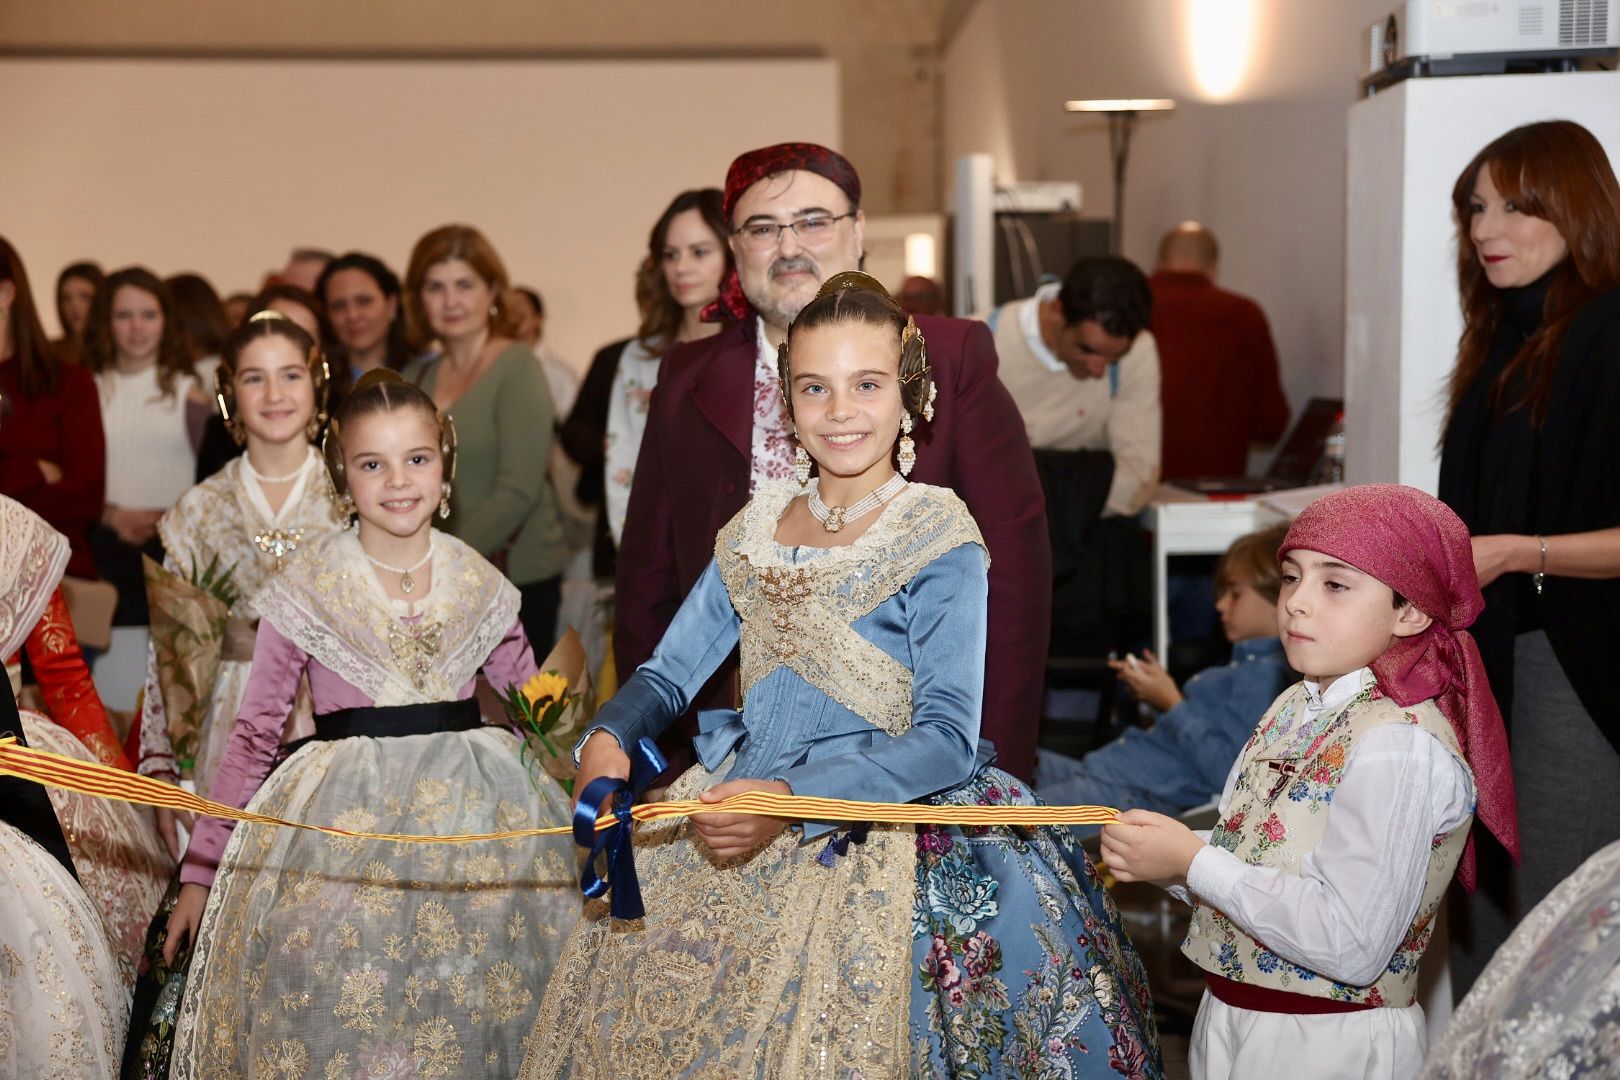 La fiesta de las fallas del Pilar-Sant Francesc con Marina y la corte infantil